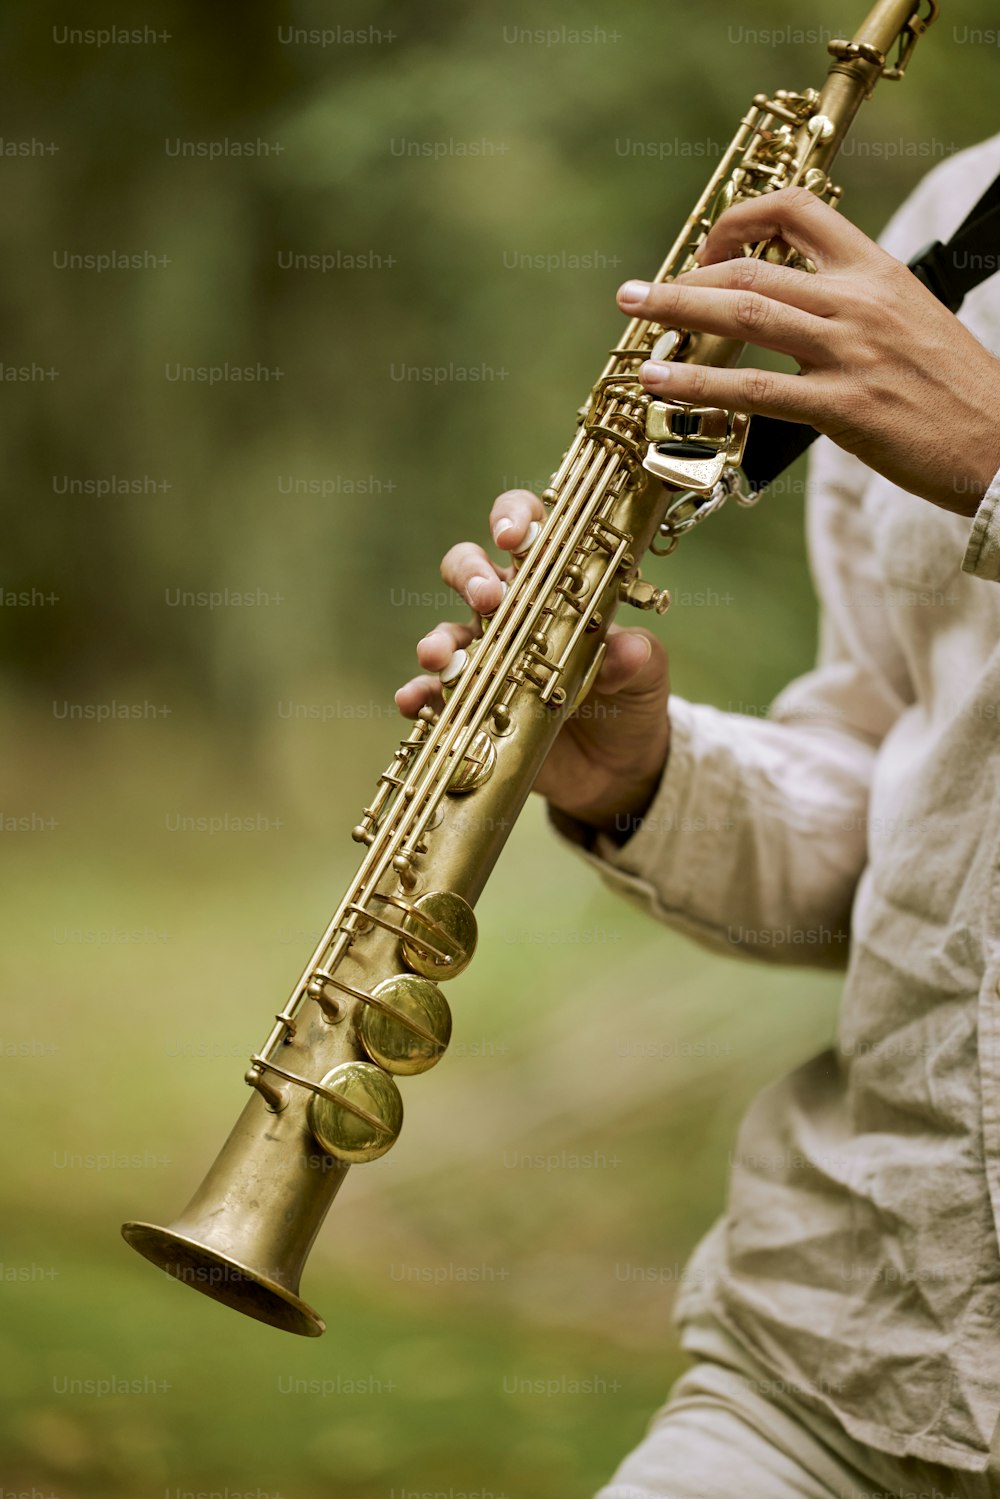 Un hombre sosteniendo un saxofón en sus manos